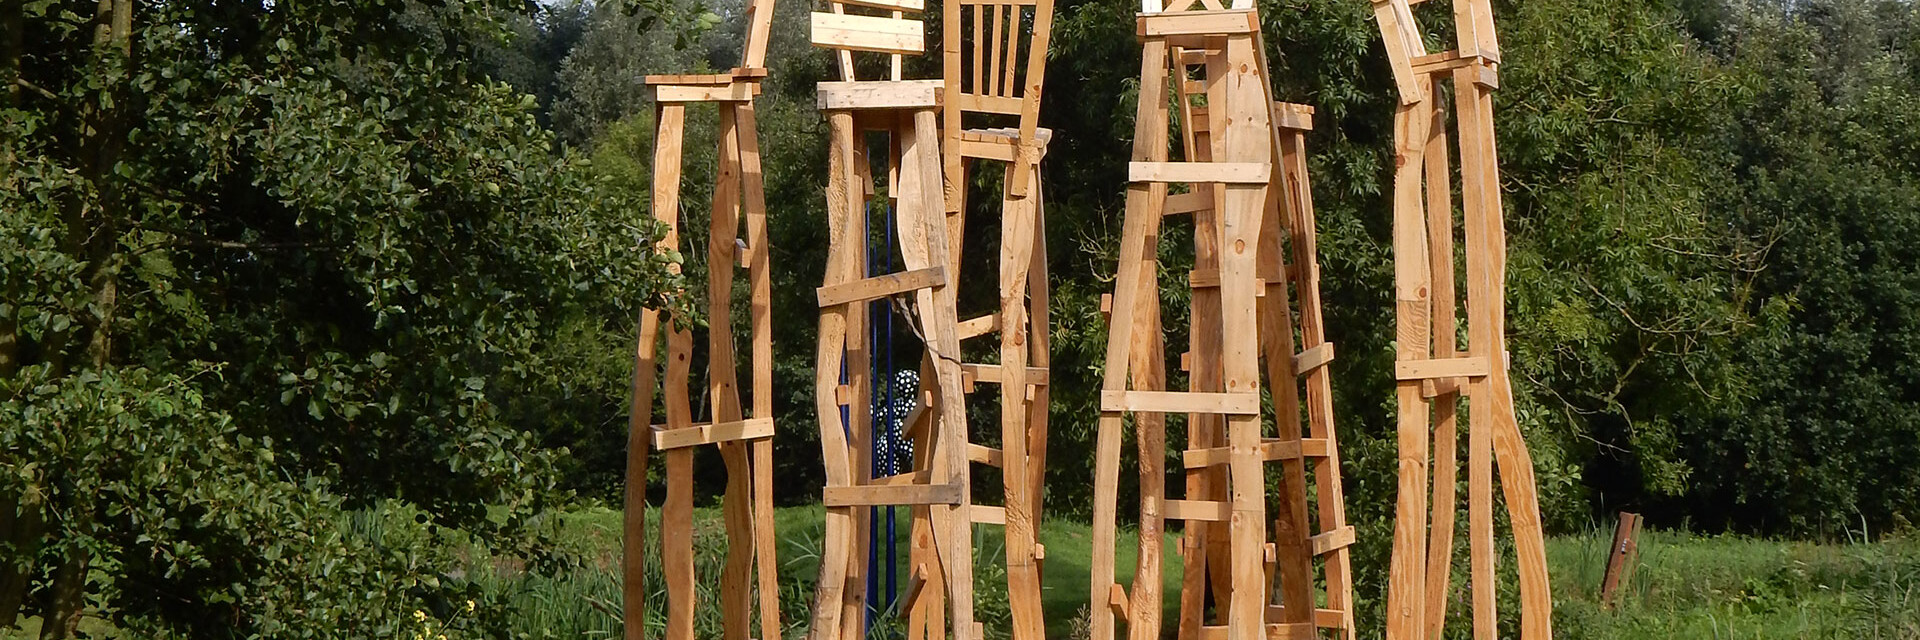 houten stoelen kunstwerk van Yubu Furutani met houten frames in het open polderlandschap van Midden-Delfland bij Land Art Delft